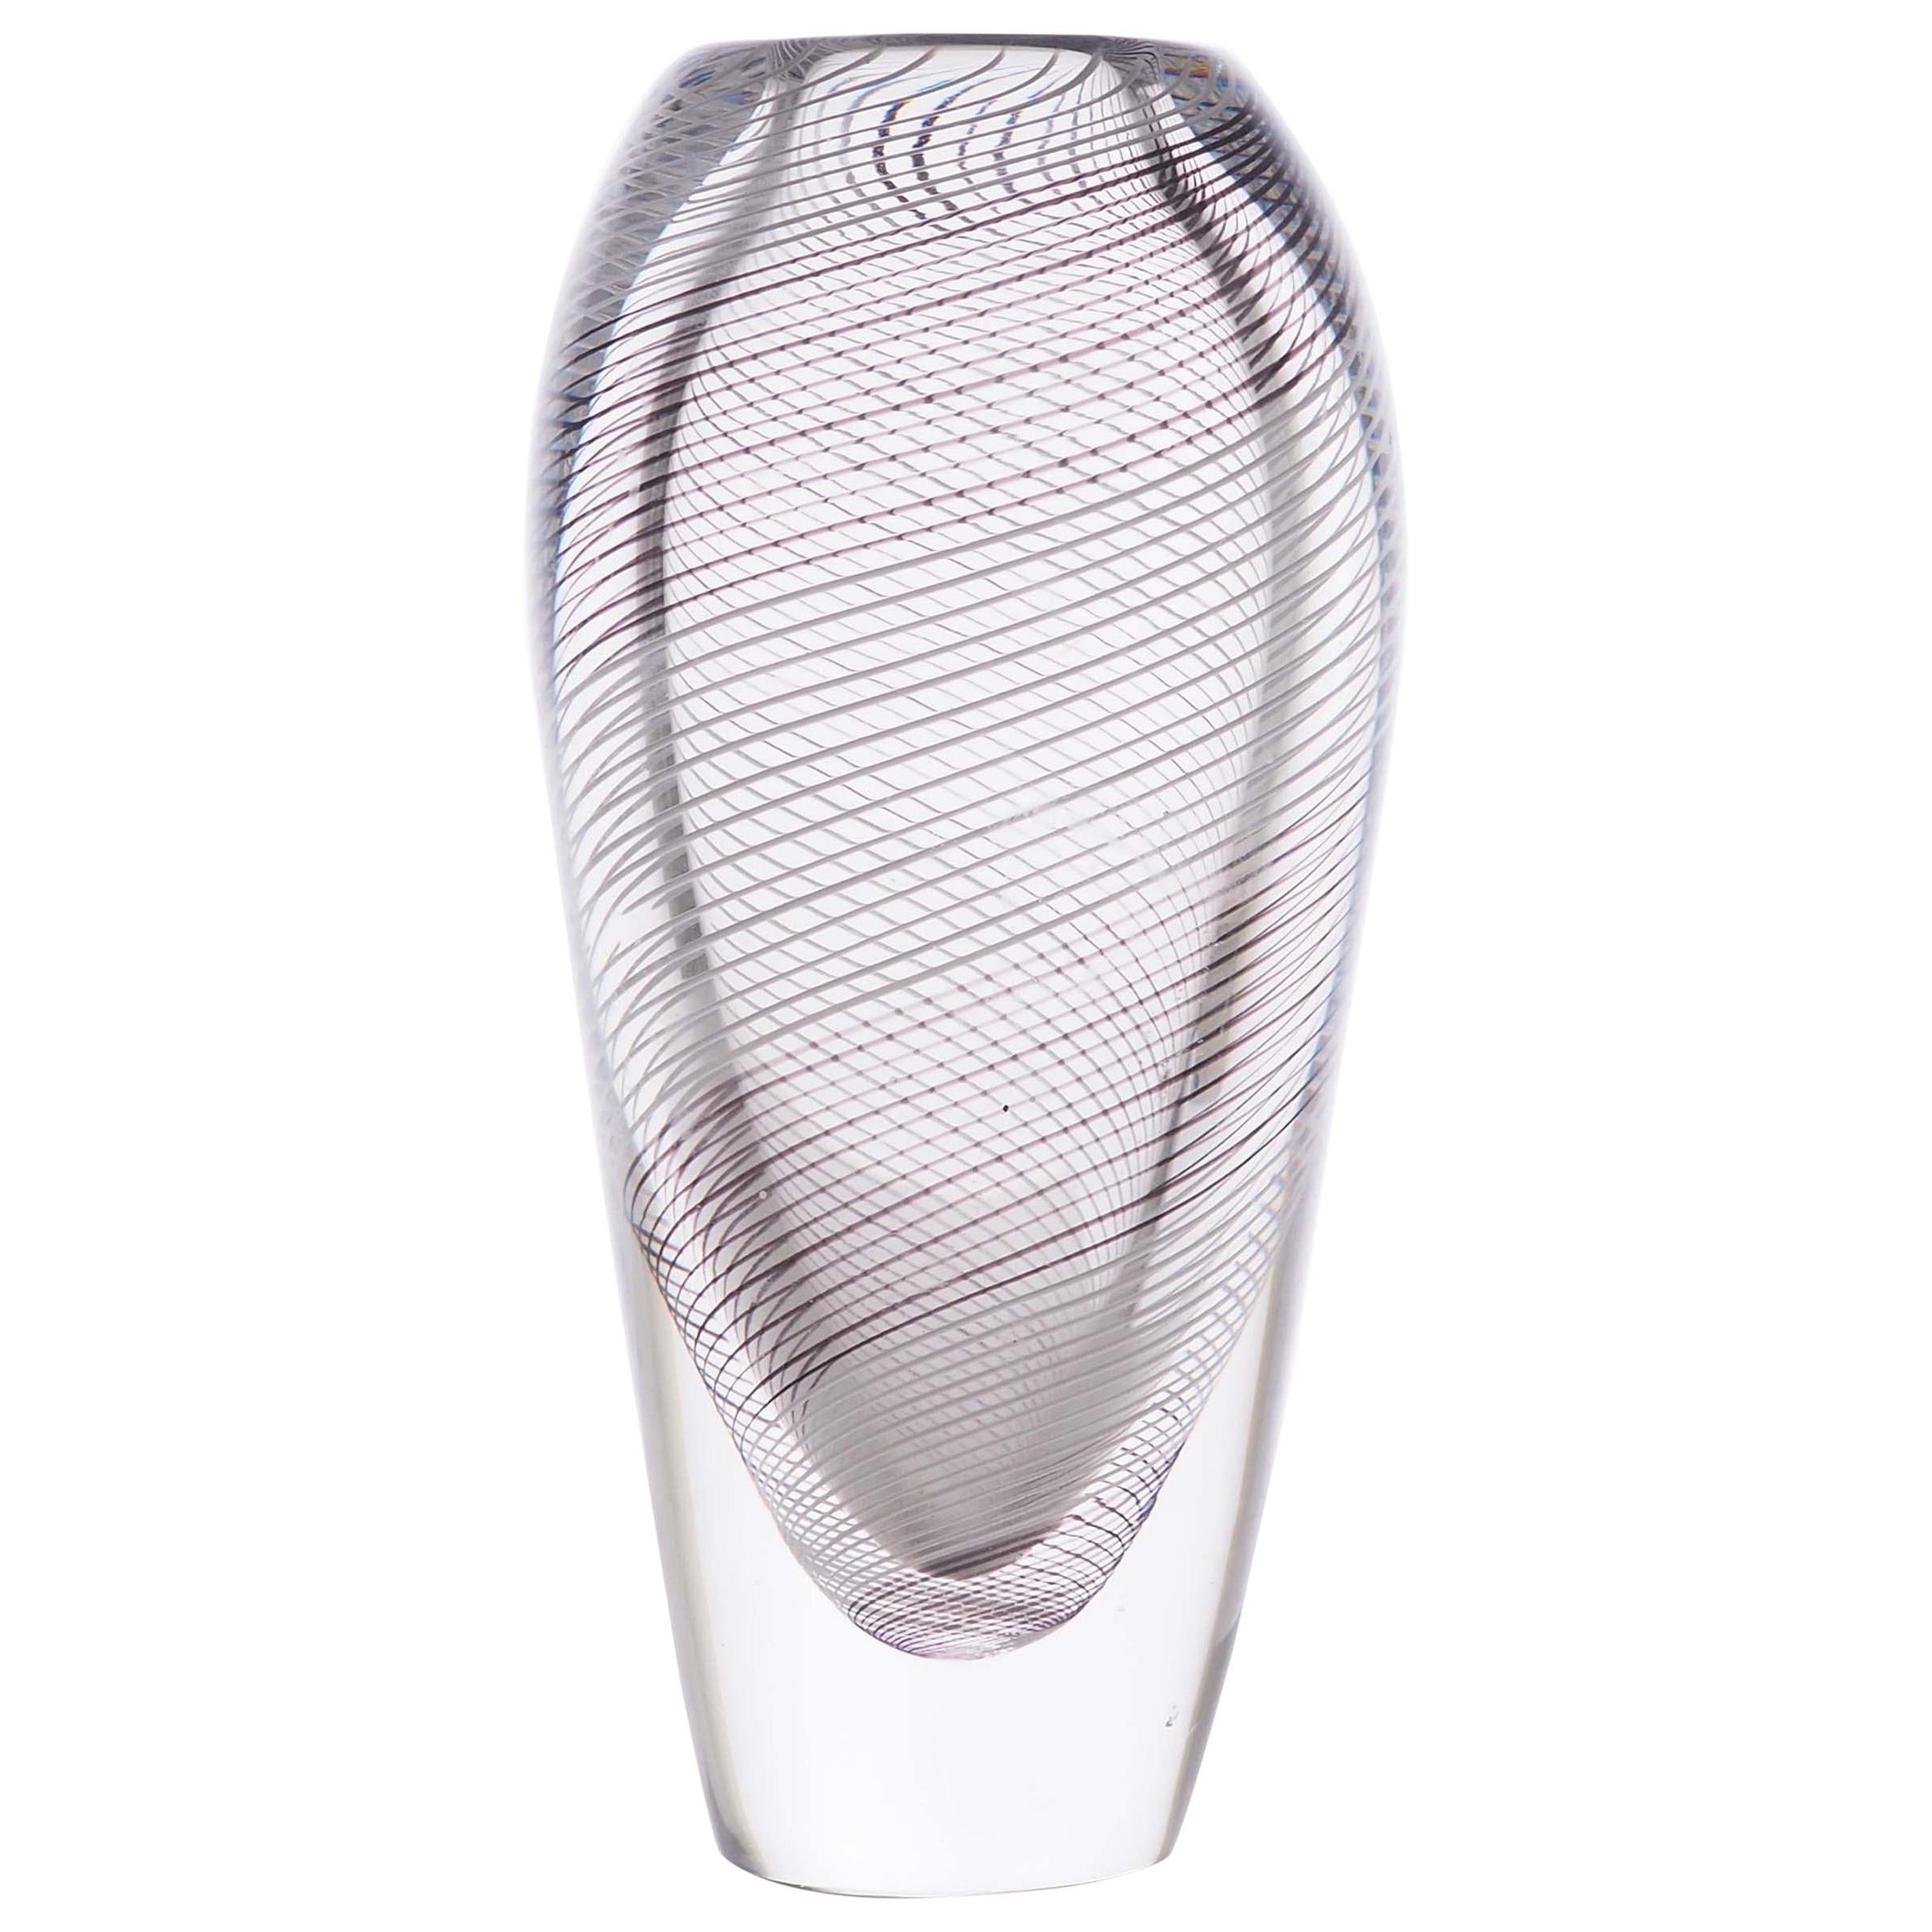 Glass Vase with Spiral Pattern by Vicke Lindstrand for Kosta, Sweden